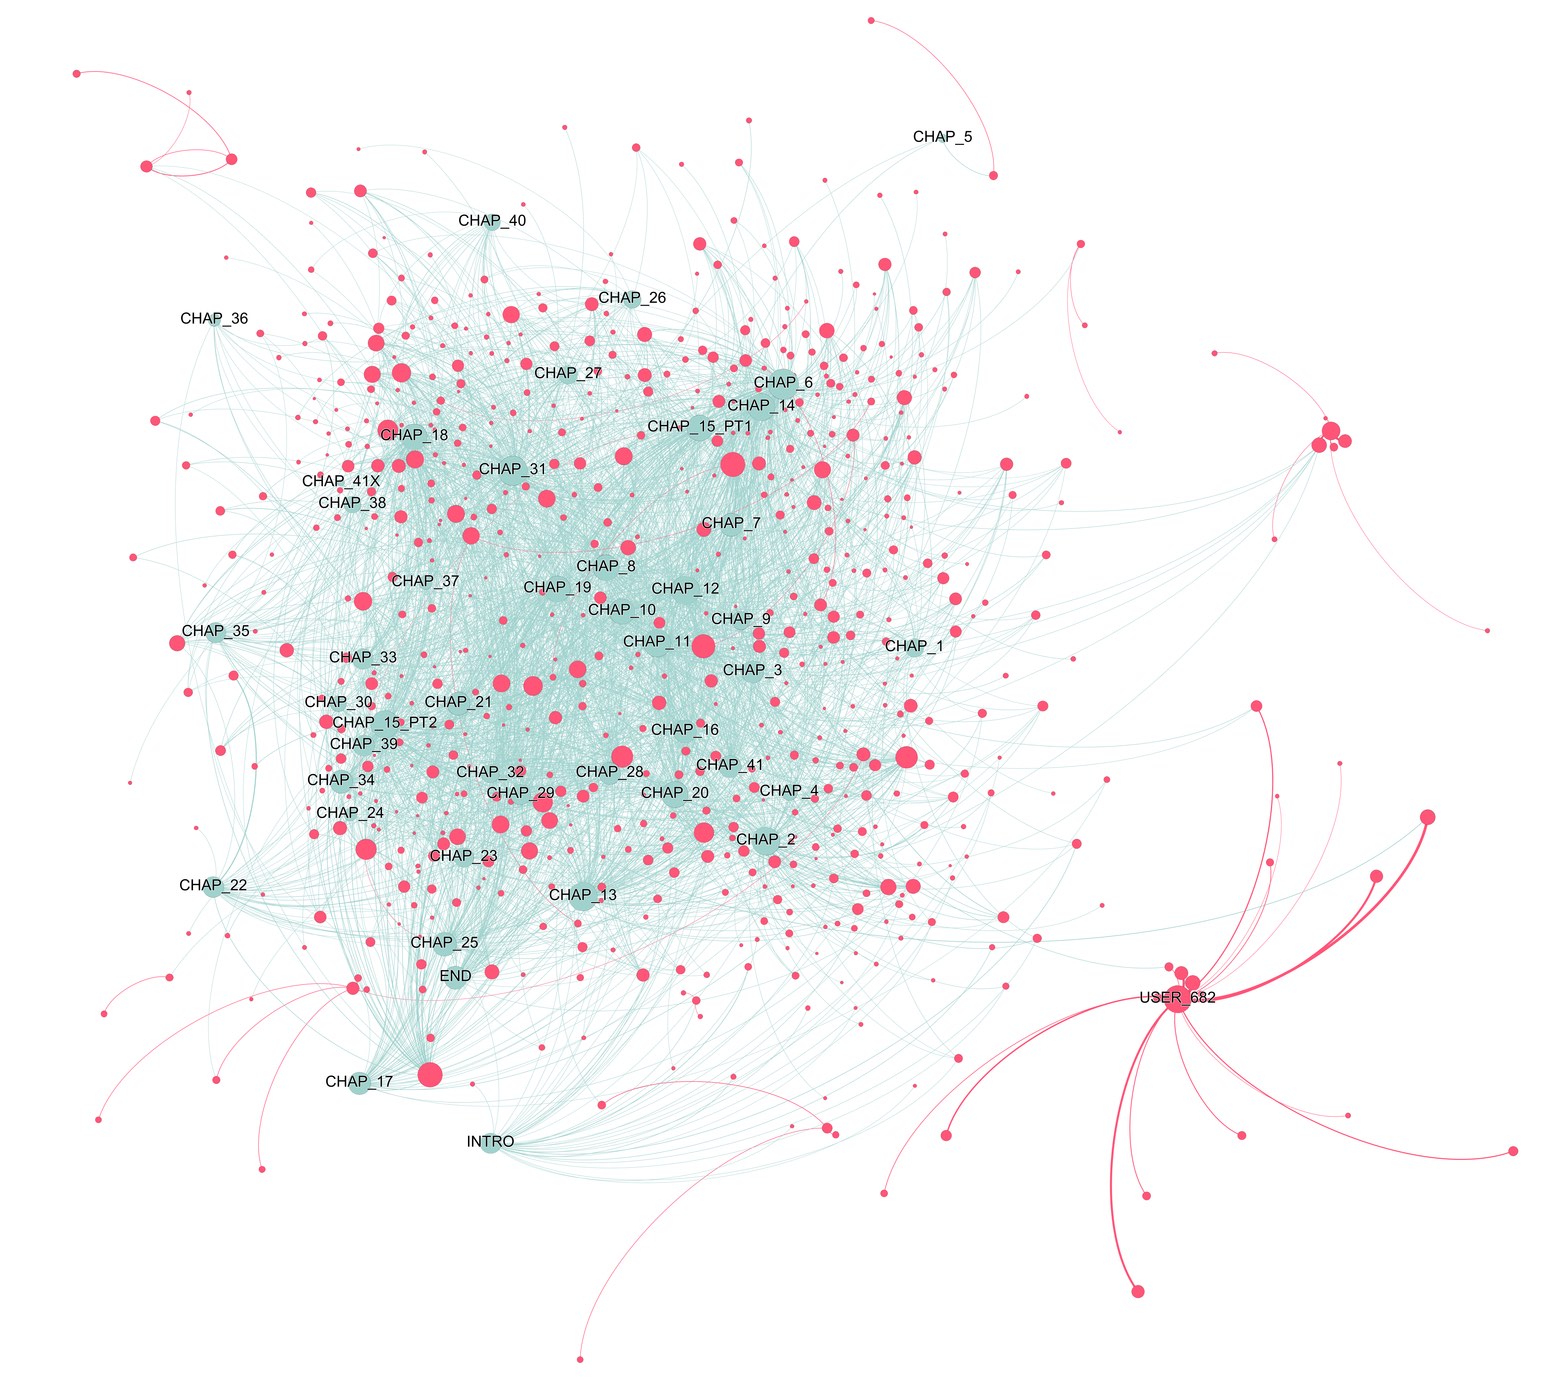 Network graph of a teen fiction novel